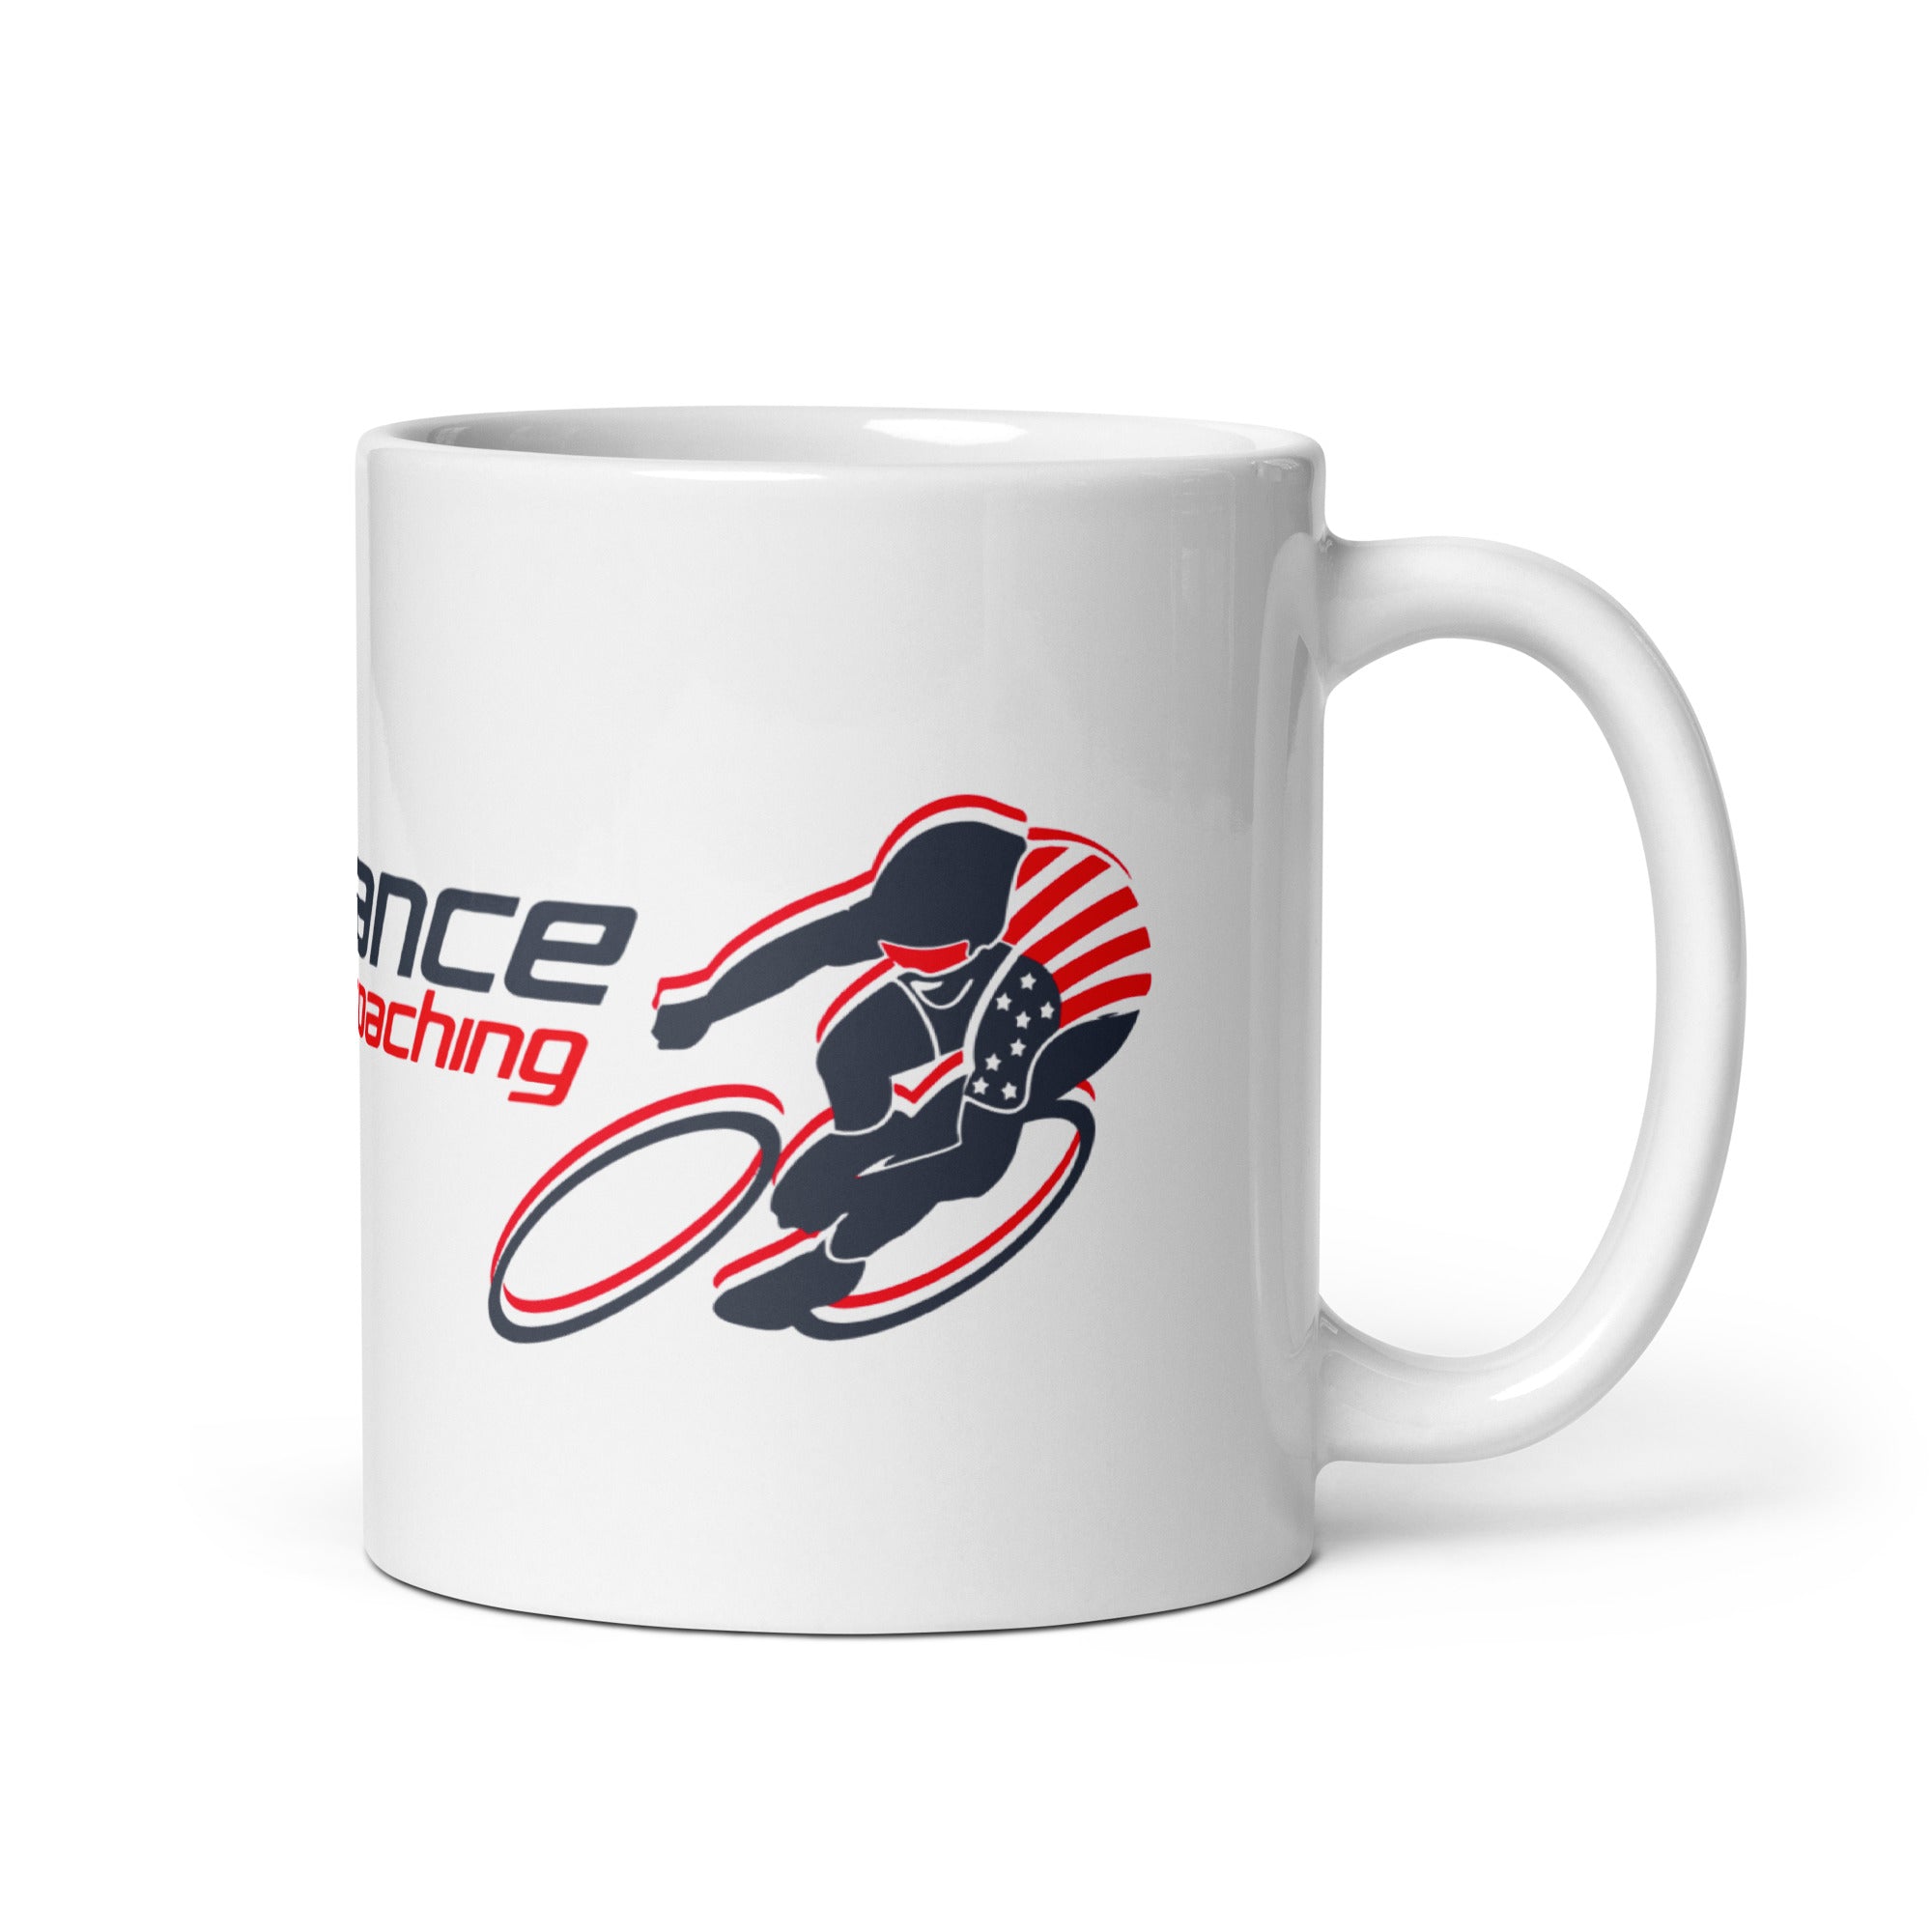 PCC White Coffee Mug